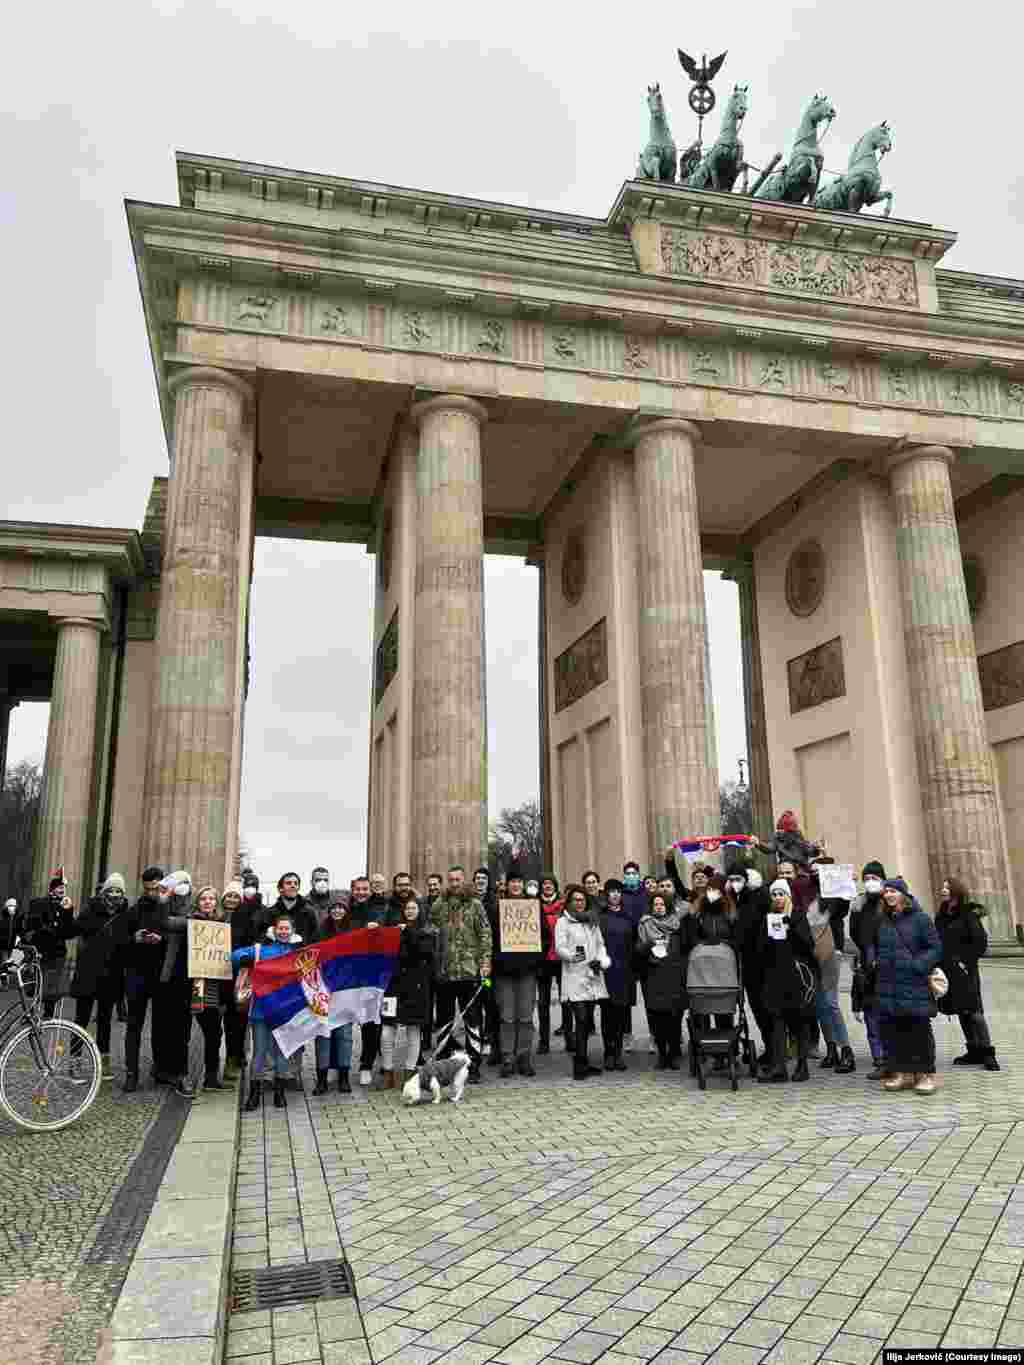 Grupa građana okupila se i kod Branderburške kapije u Berlinu u znak podrške demonstrantima u Srbiji